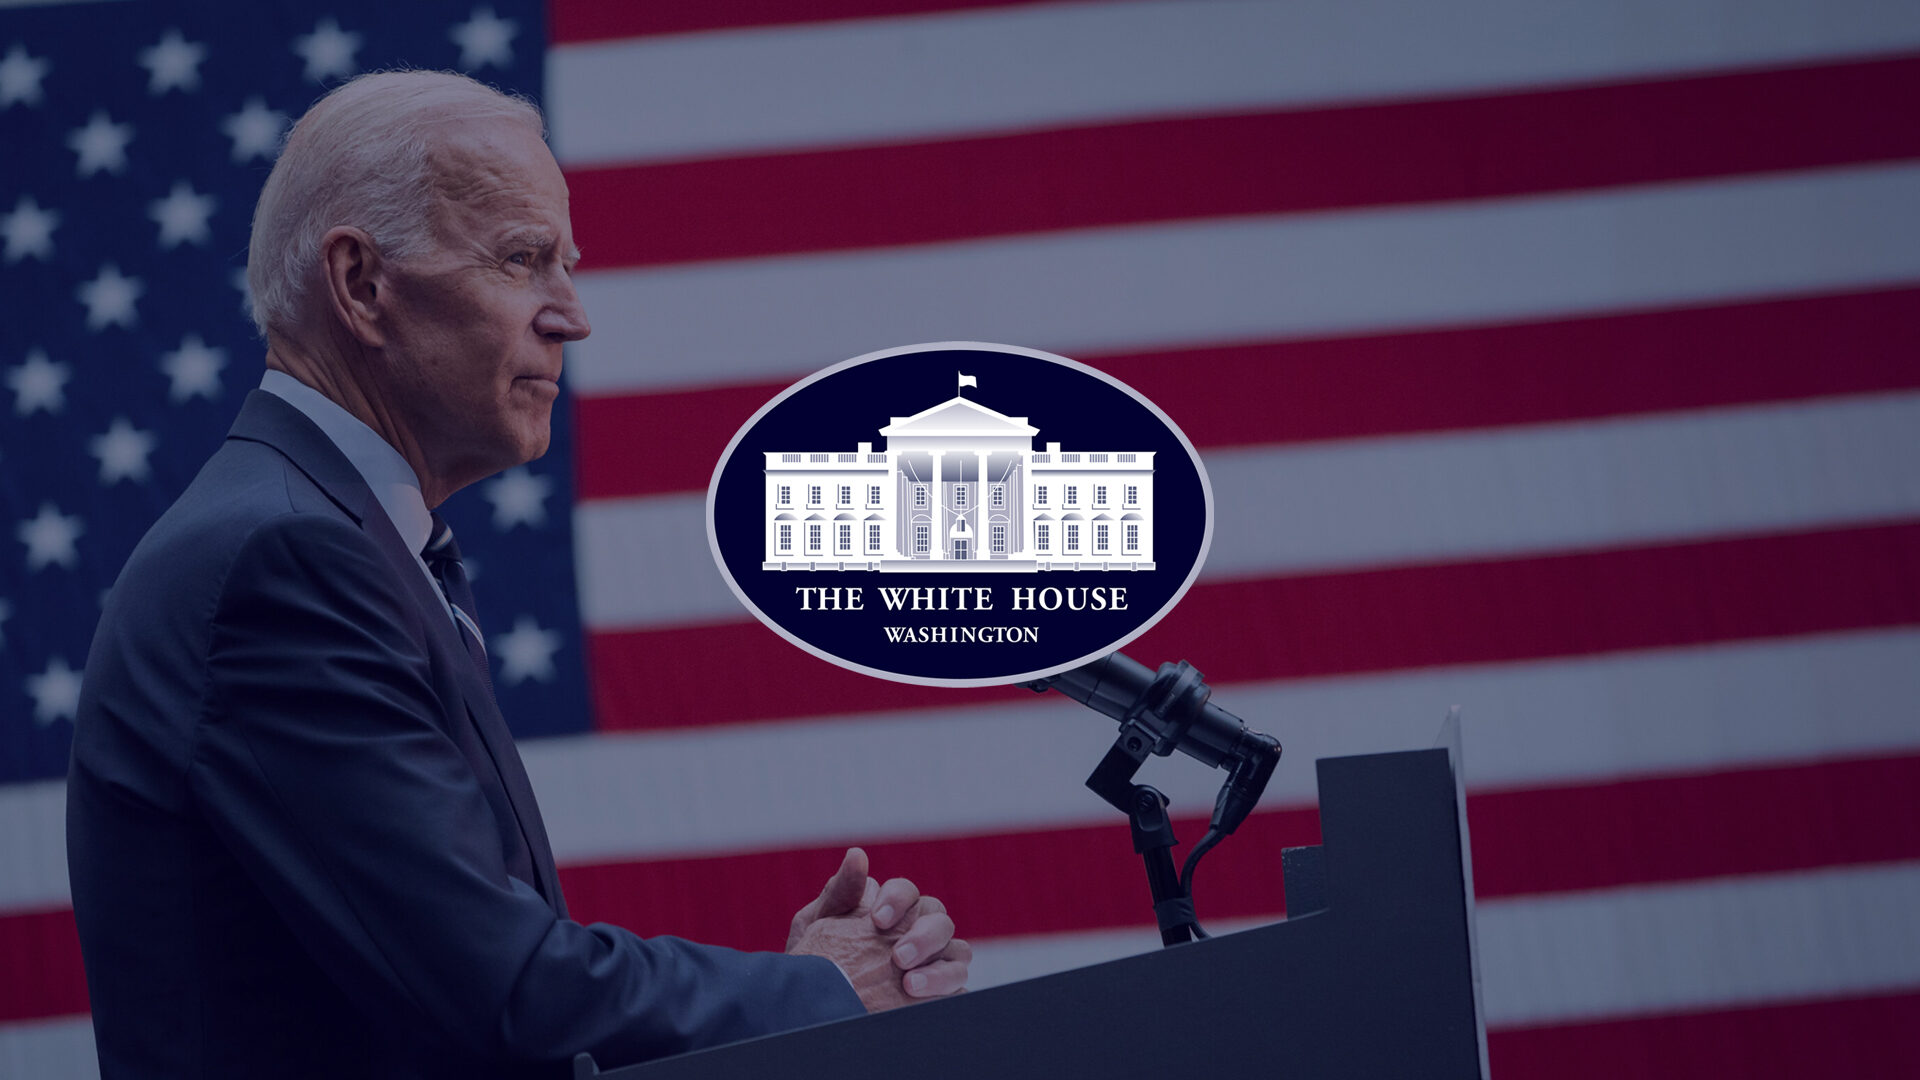 White House Logo Over Image Of President Biden